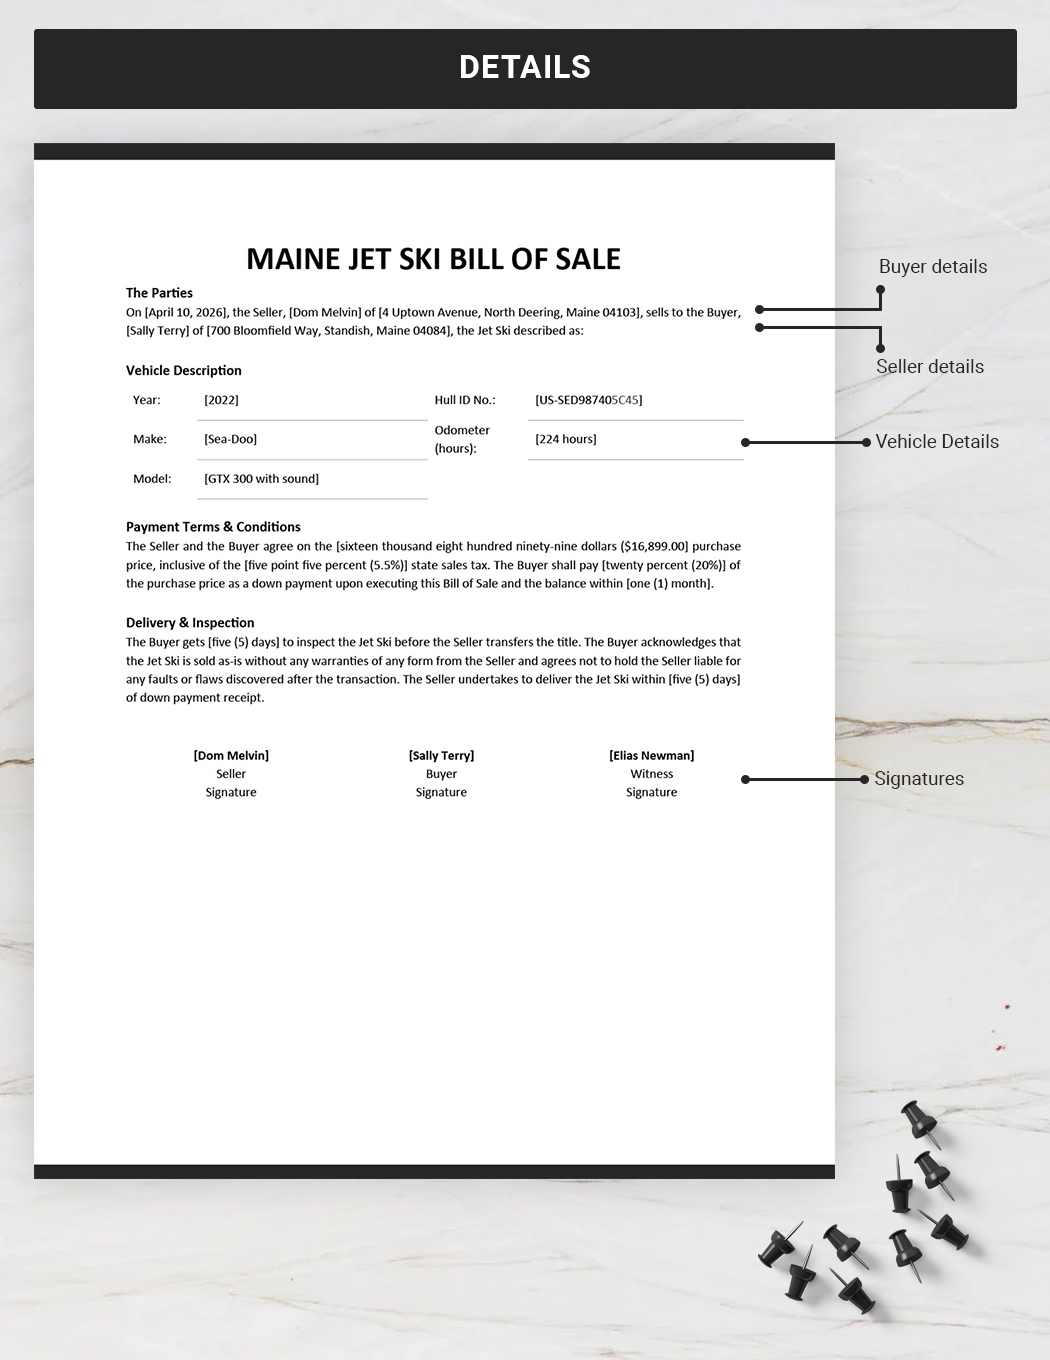 Maine Jet Ski Bill of Sale Template